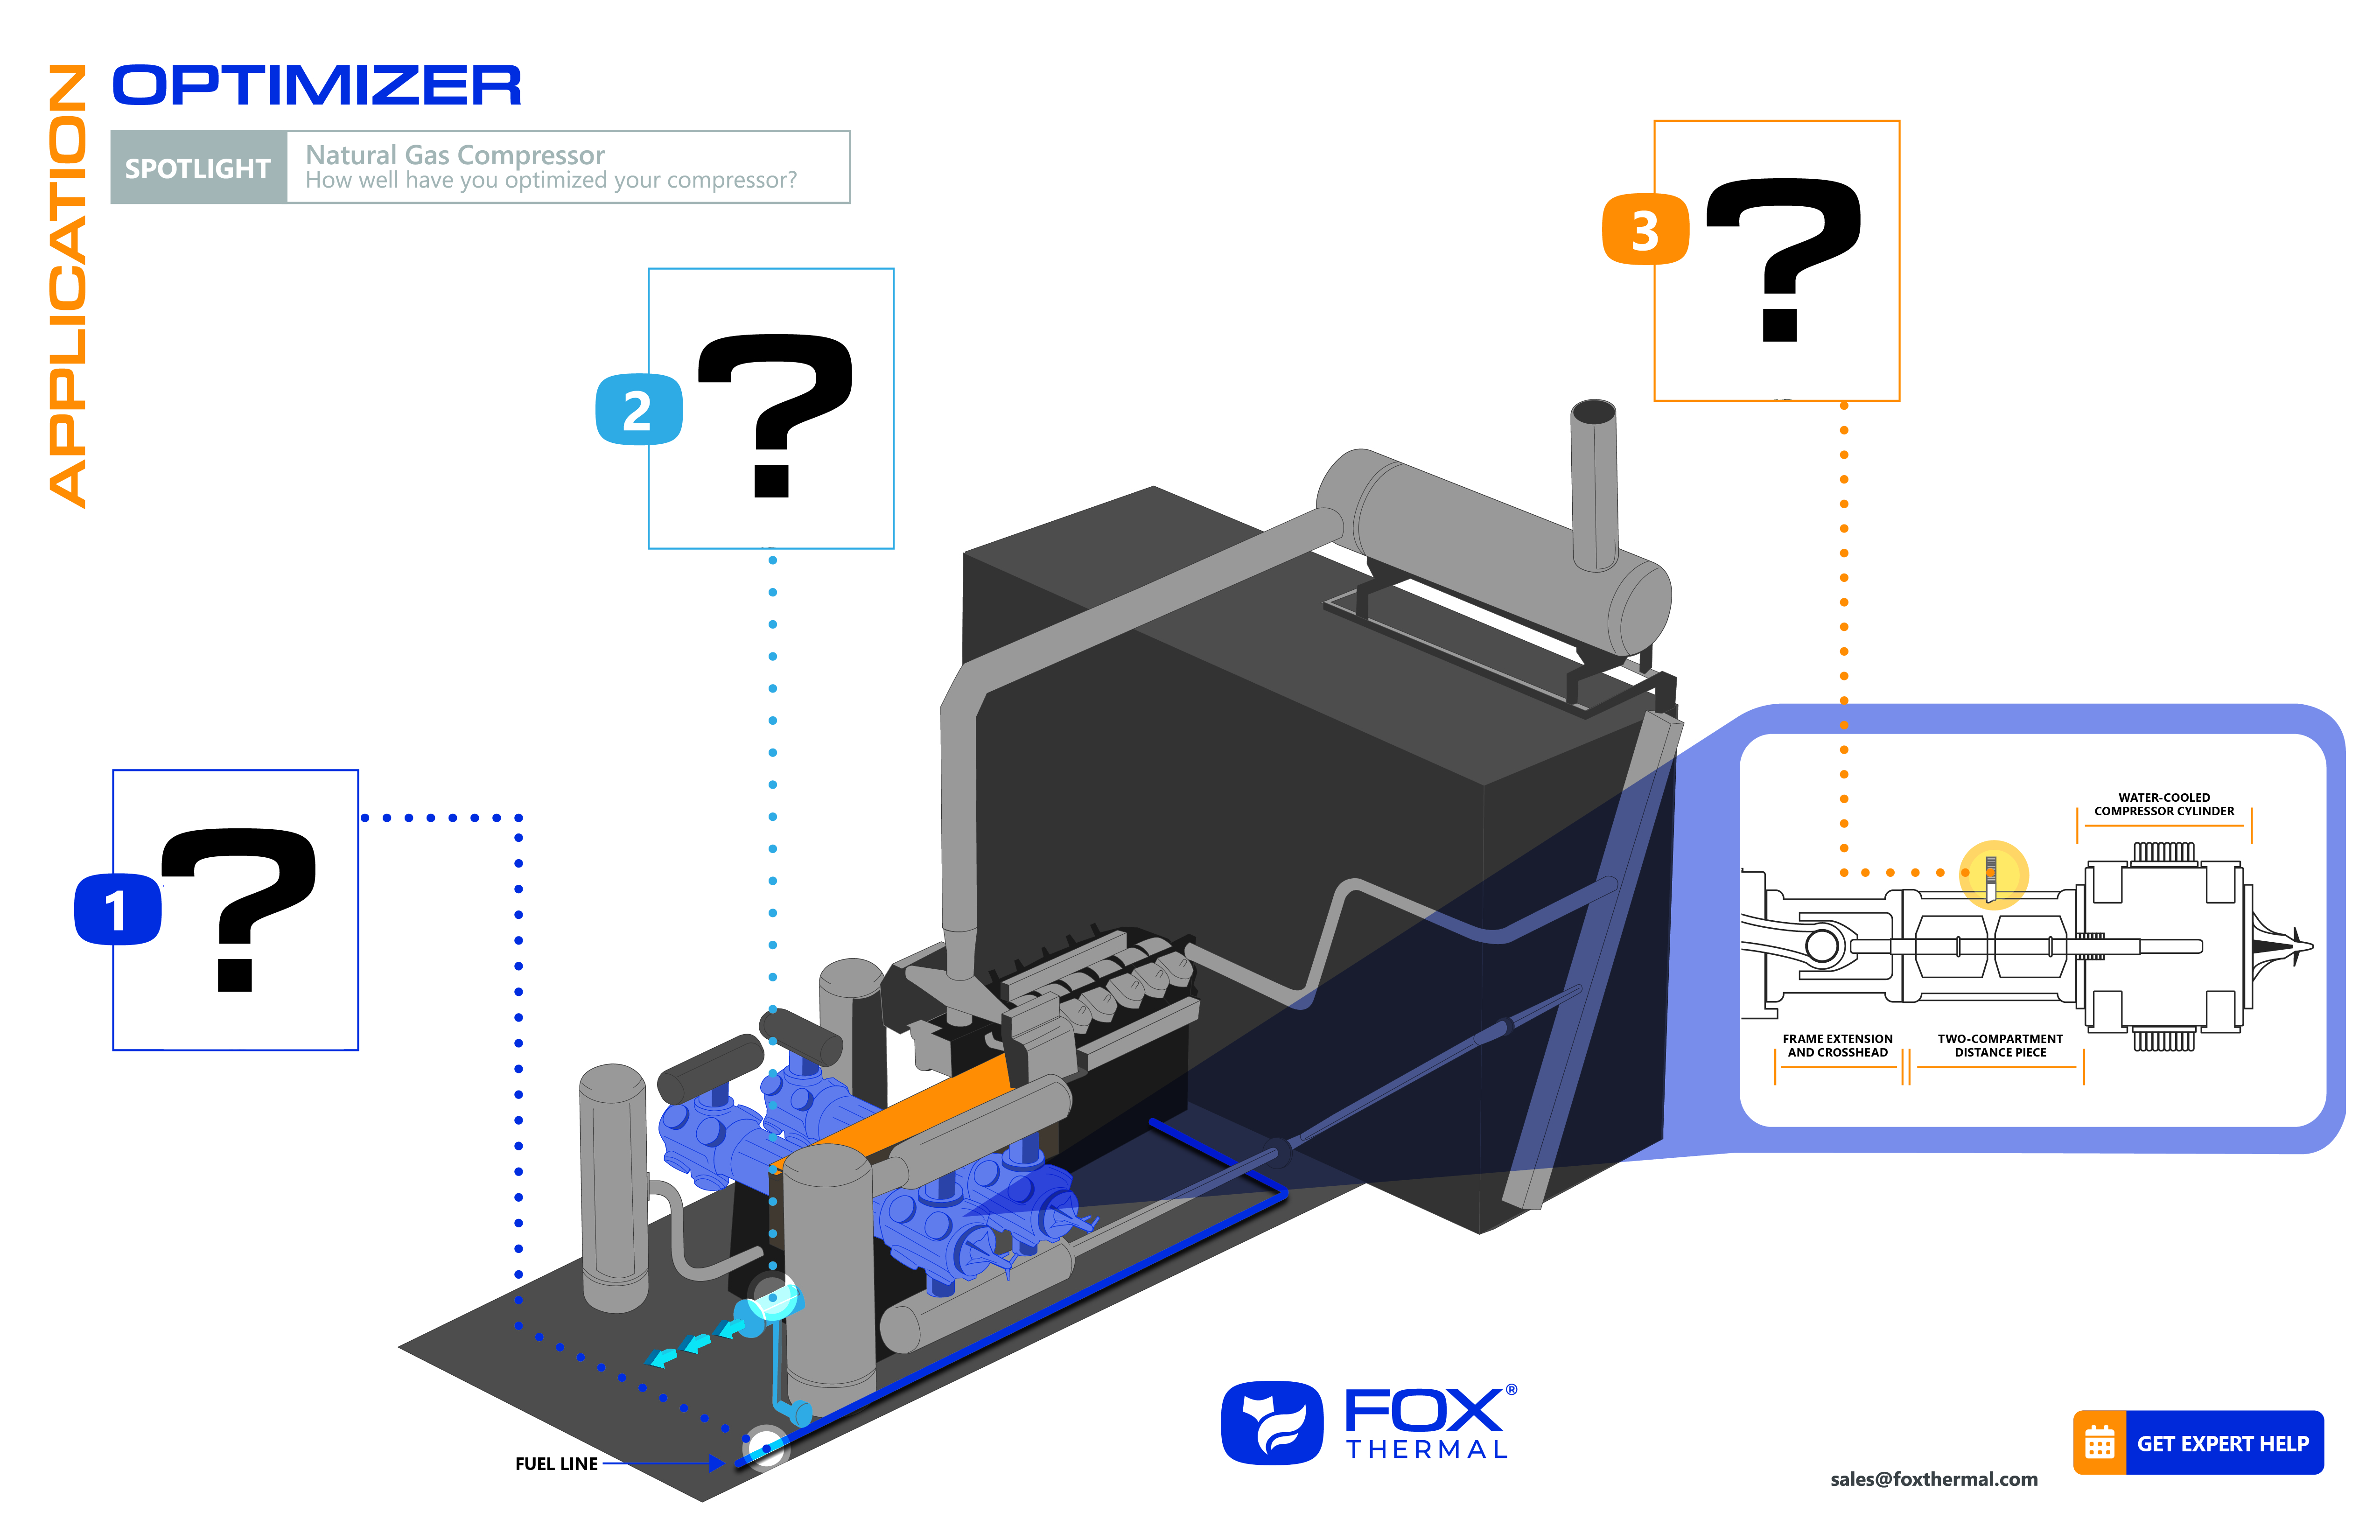 Fox O&G Gas Compressor Application Optimizer